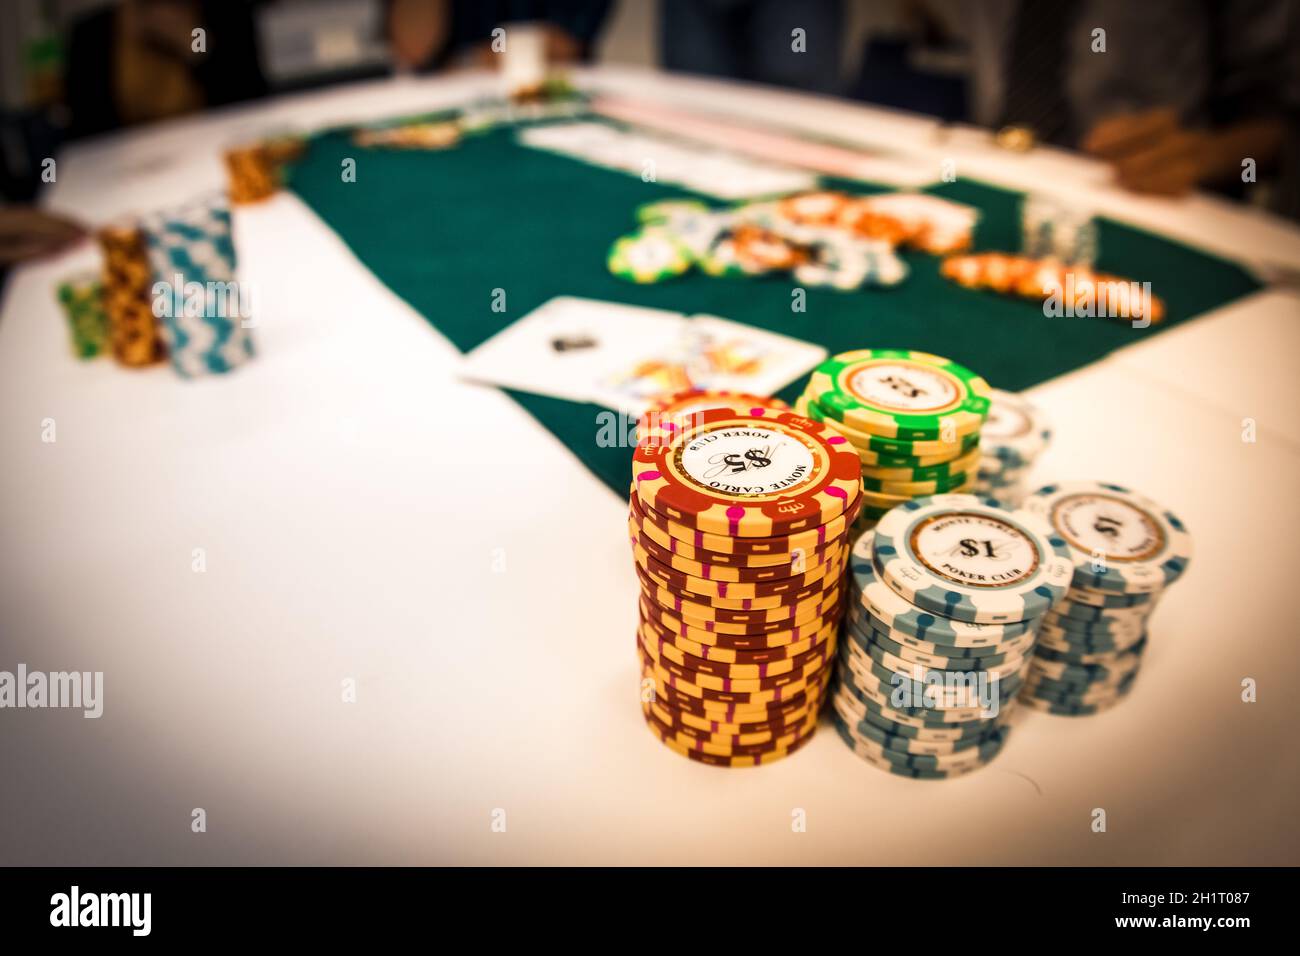 Image de Texas Holdem (poker). Lieu de tournage : zone métropolitaine de Tokyo Banque D'Images